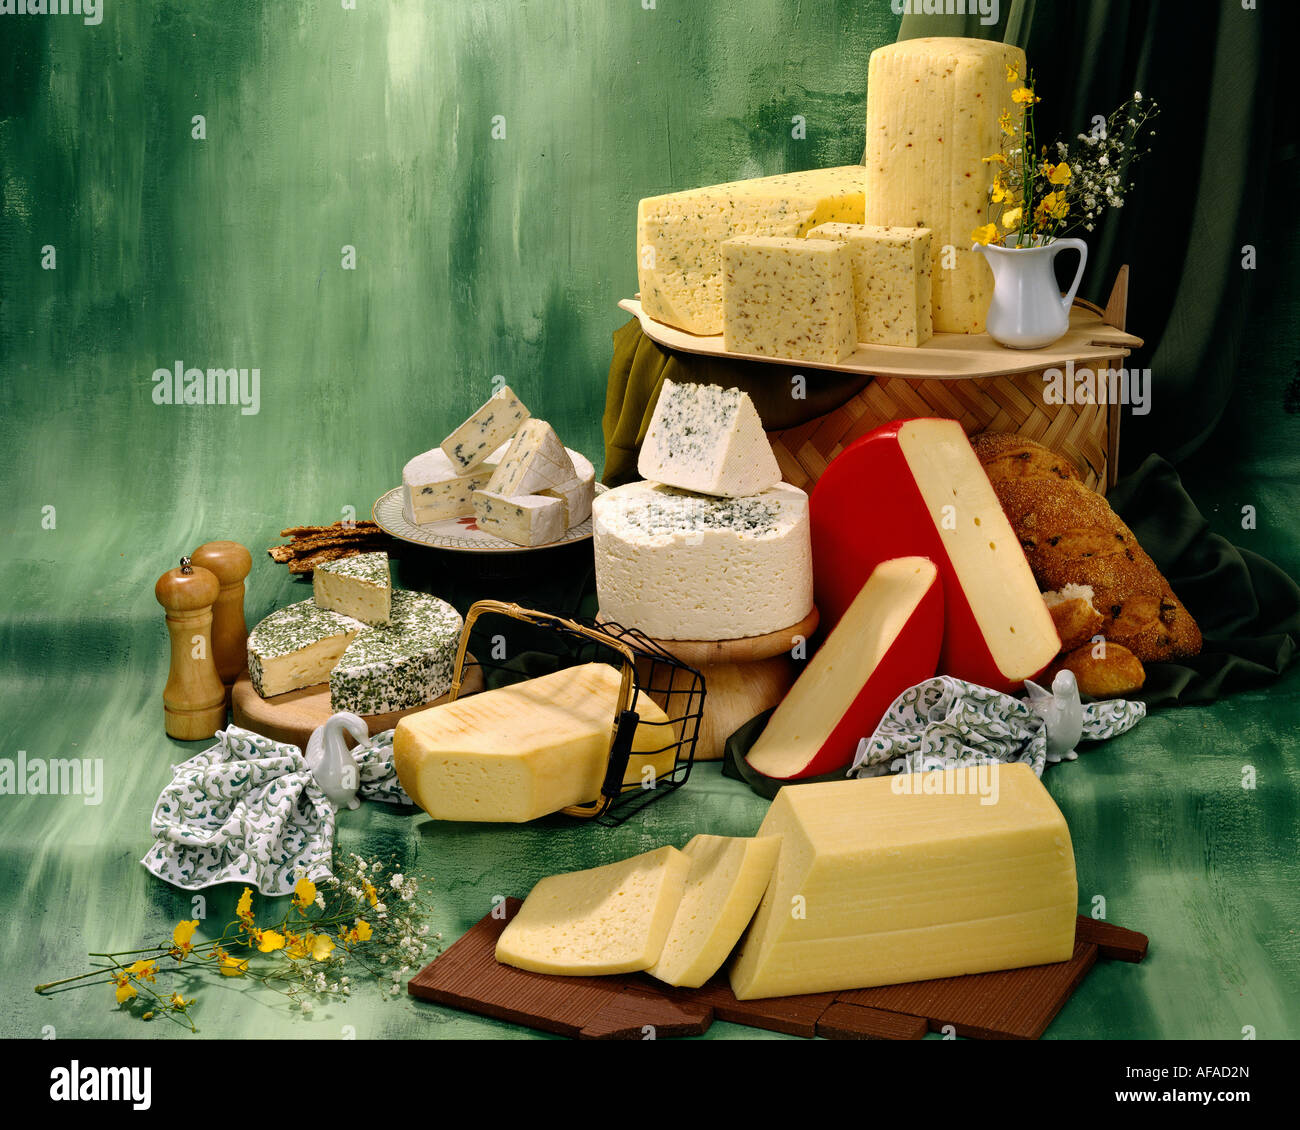 Dänischer Käse in Gruppe Farbfoto auf grün getönten gesprenkelte Hintergrund. Querformat, Studio Tischplatte. Klassisches Bild Stockfoto